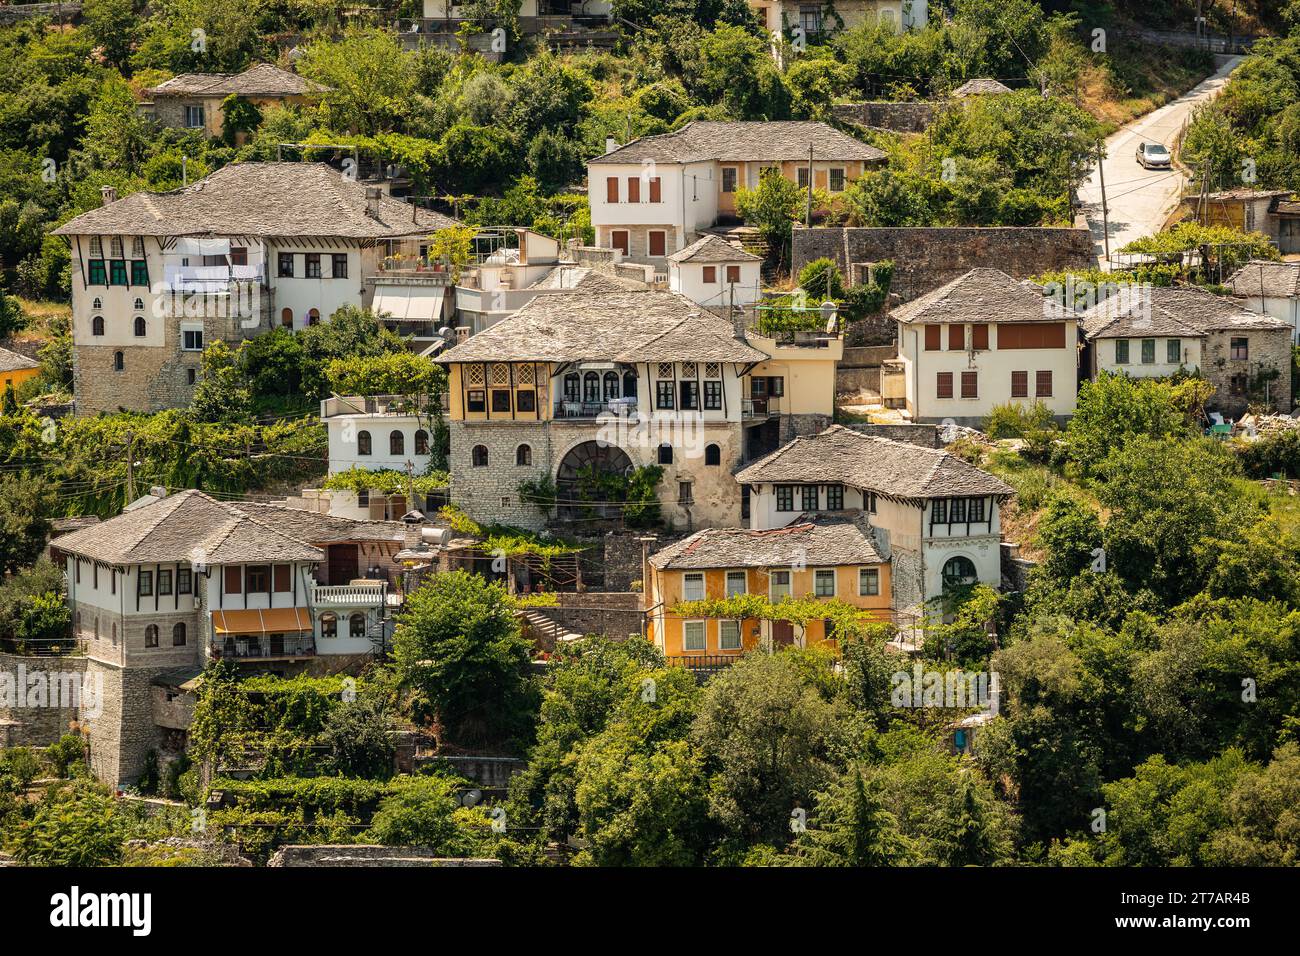 Città di Gjirokastër nell'Albania meridionale. La città vecchia di ¨è un sito patrimonio dell'umanità dell'UNESCO. Primo piano degli edifici architettonici. Foto Stock